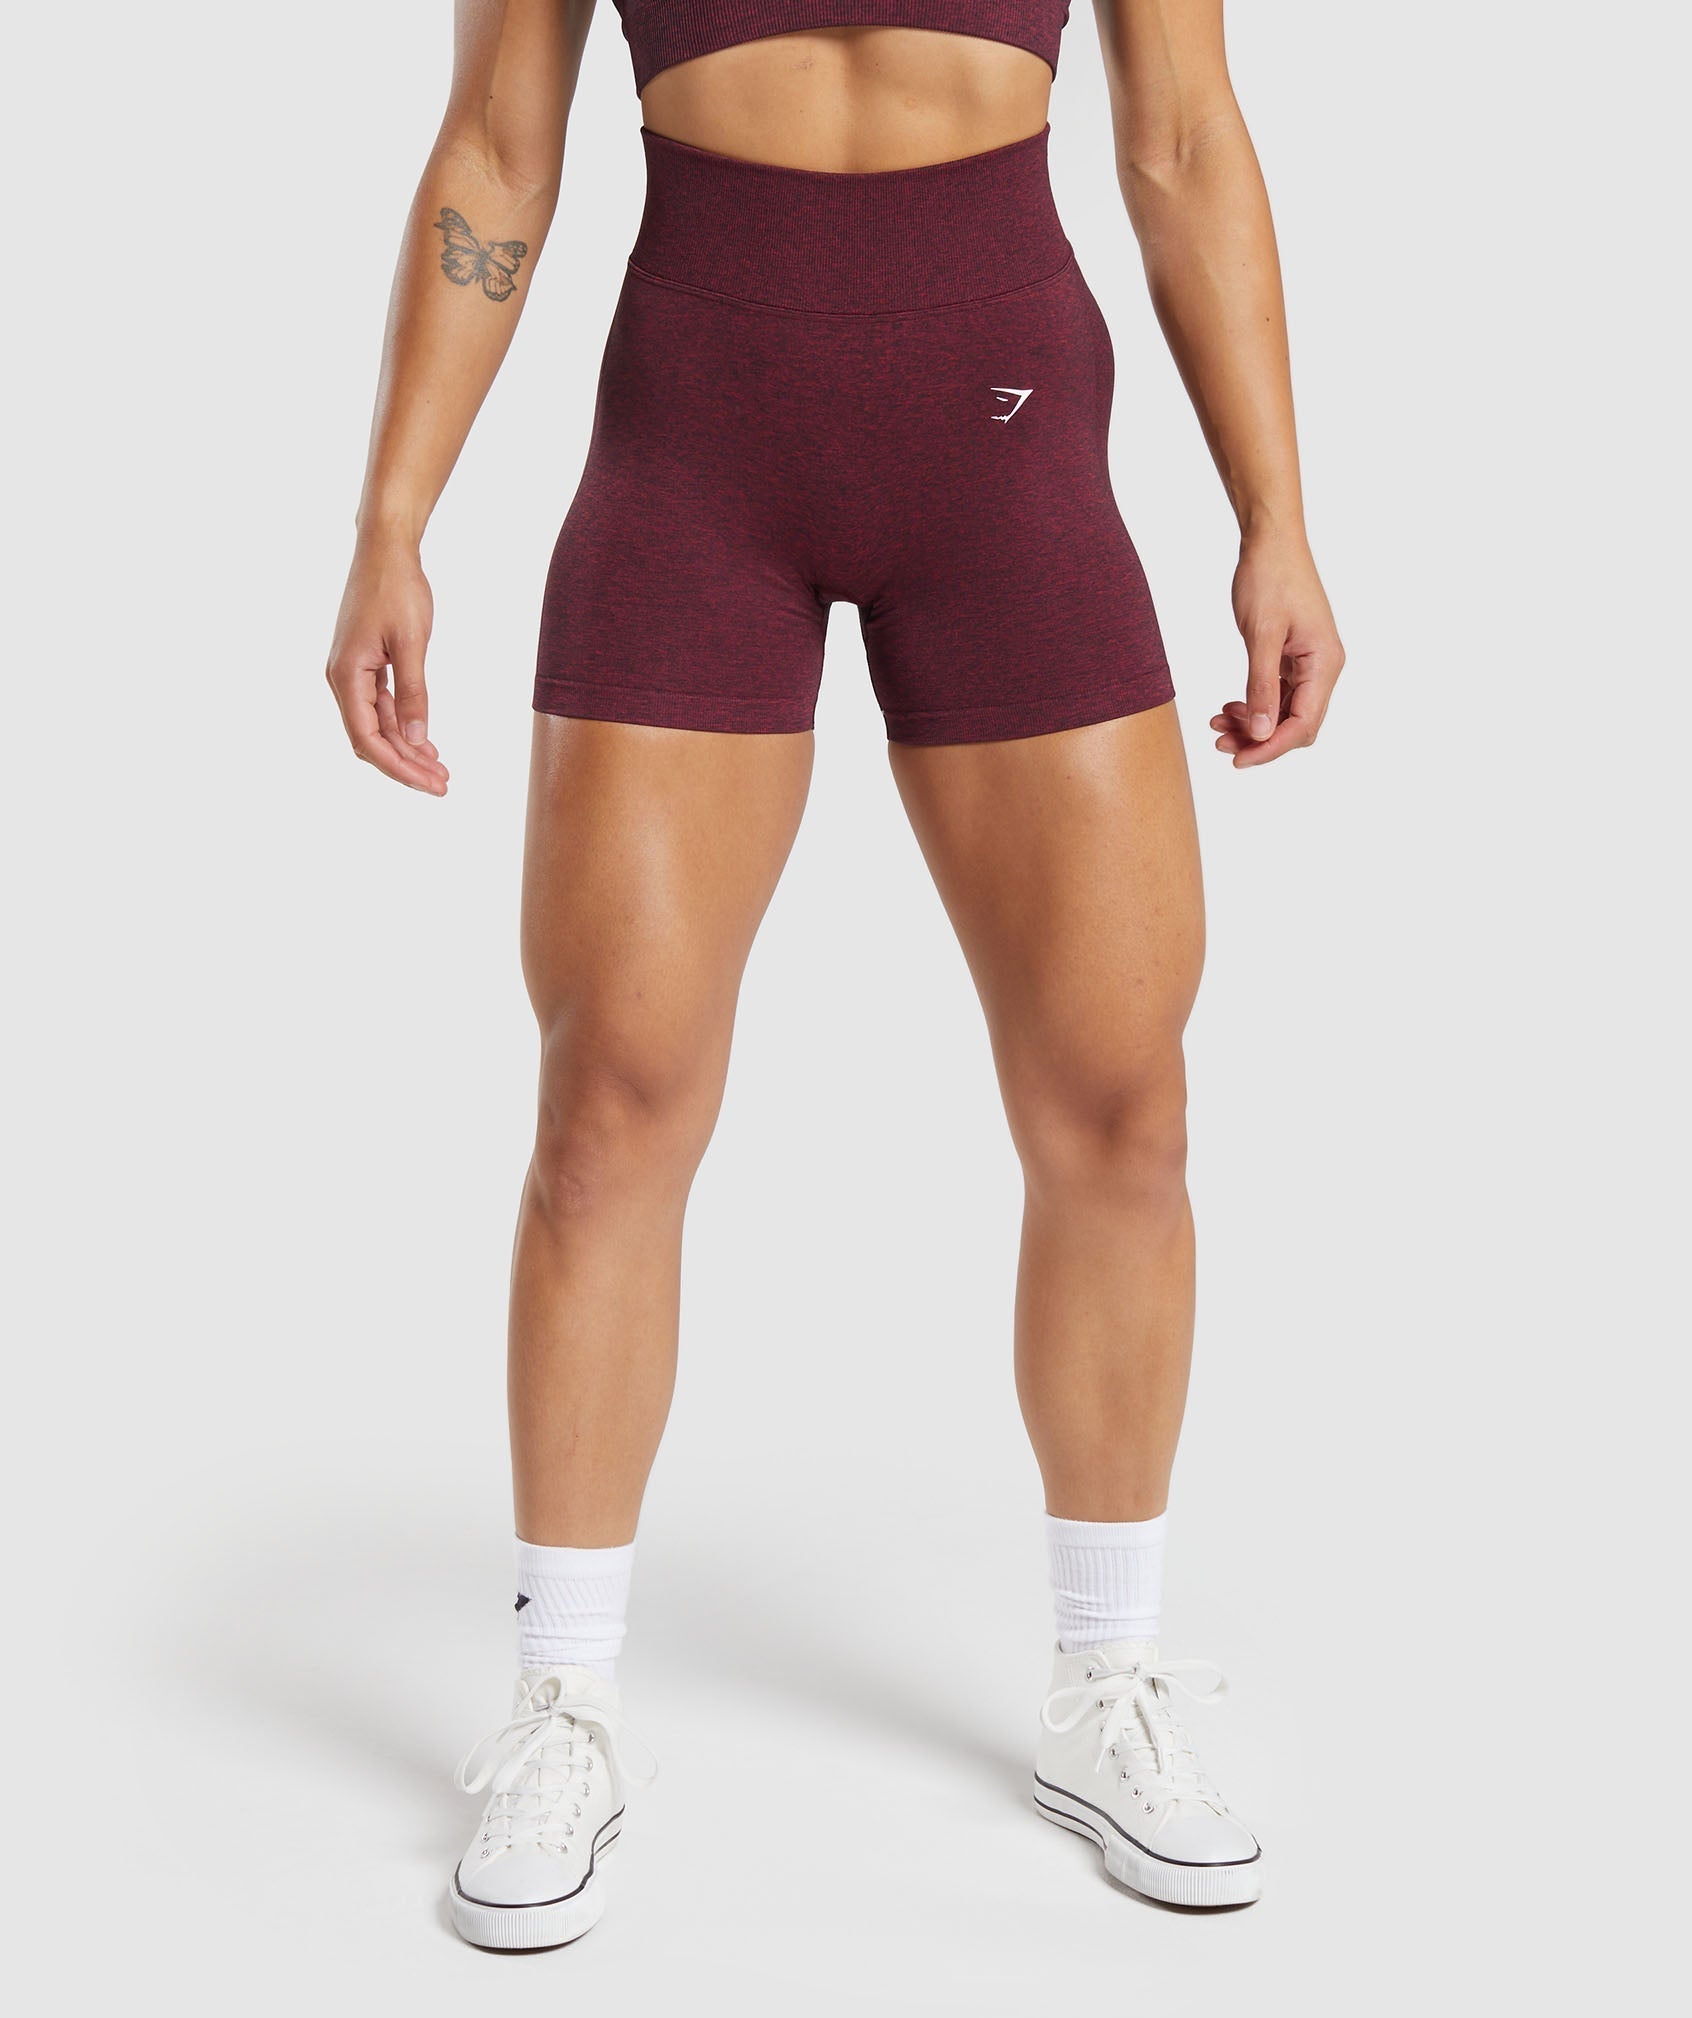 THESE SHORTS>> Limitless shorts (Sundried Red) Size medium @gymshark # gymshark #gymsharkwomen #gs #ad #gym #gymmotivation #lift #f